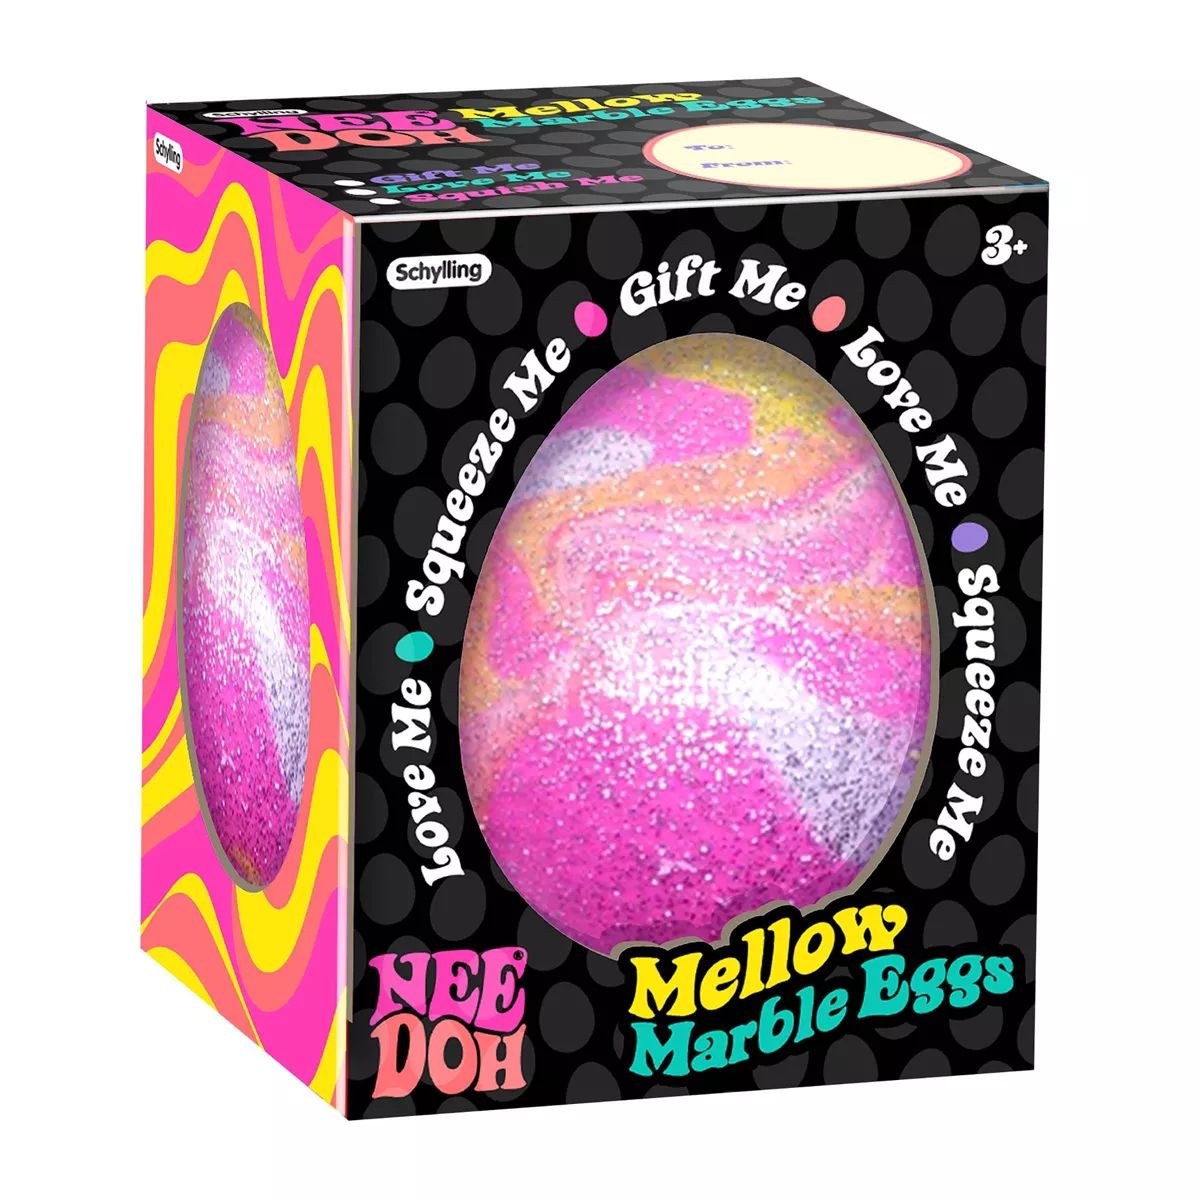 Nee Doh Marble Egg | Target